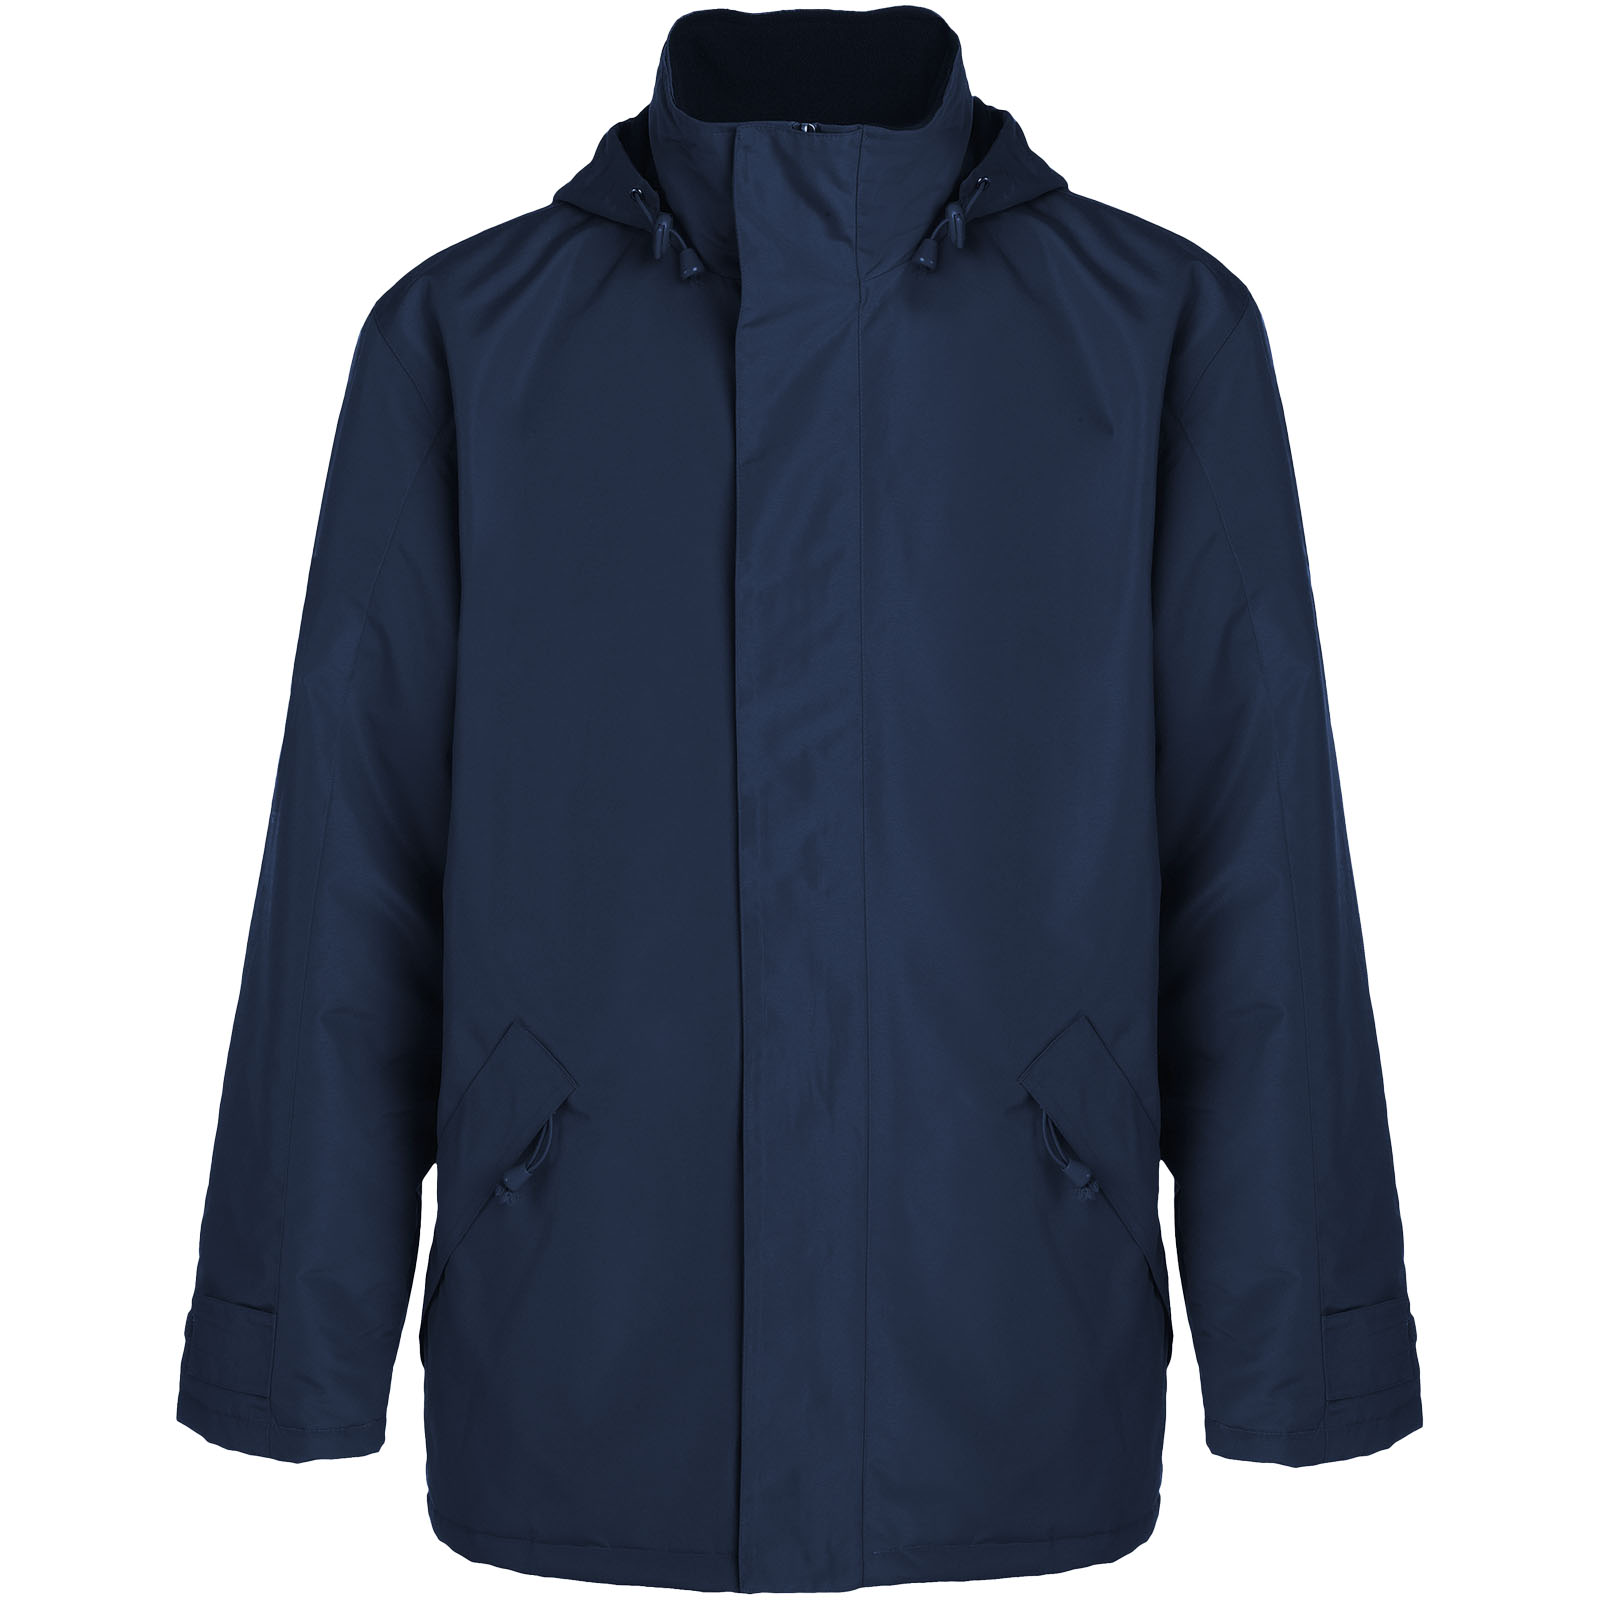 Clothing - Europa unisex insulated jacket